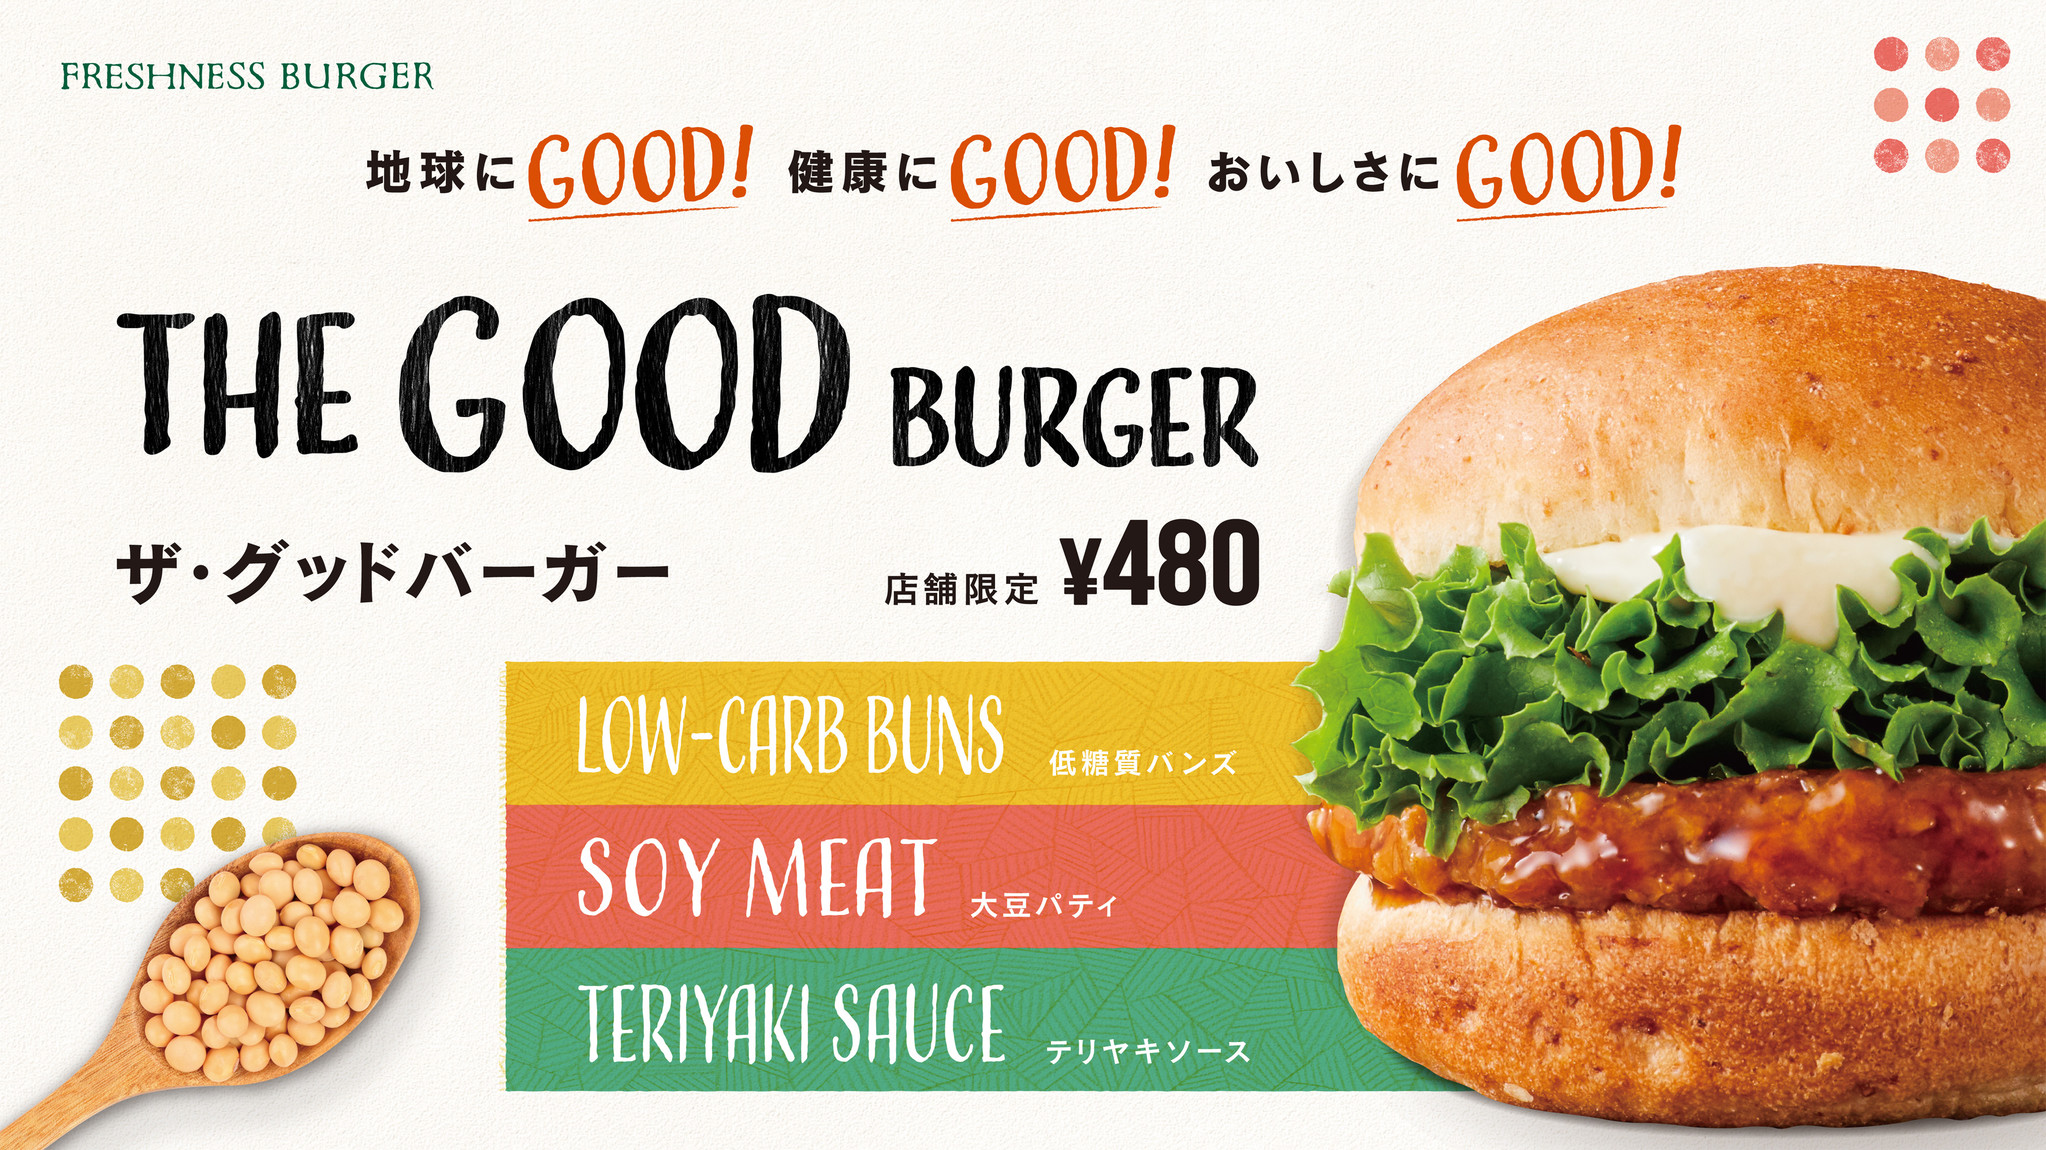 フレッシュネスバーガー発売の The Good Burger にdaizの発芽大豆由来の植物肉が採用されました Daiz株式会社 Daiz Inc のプレスリリース